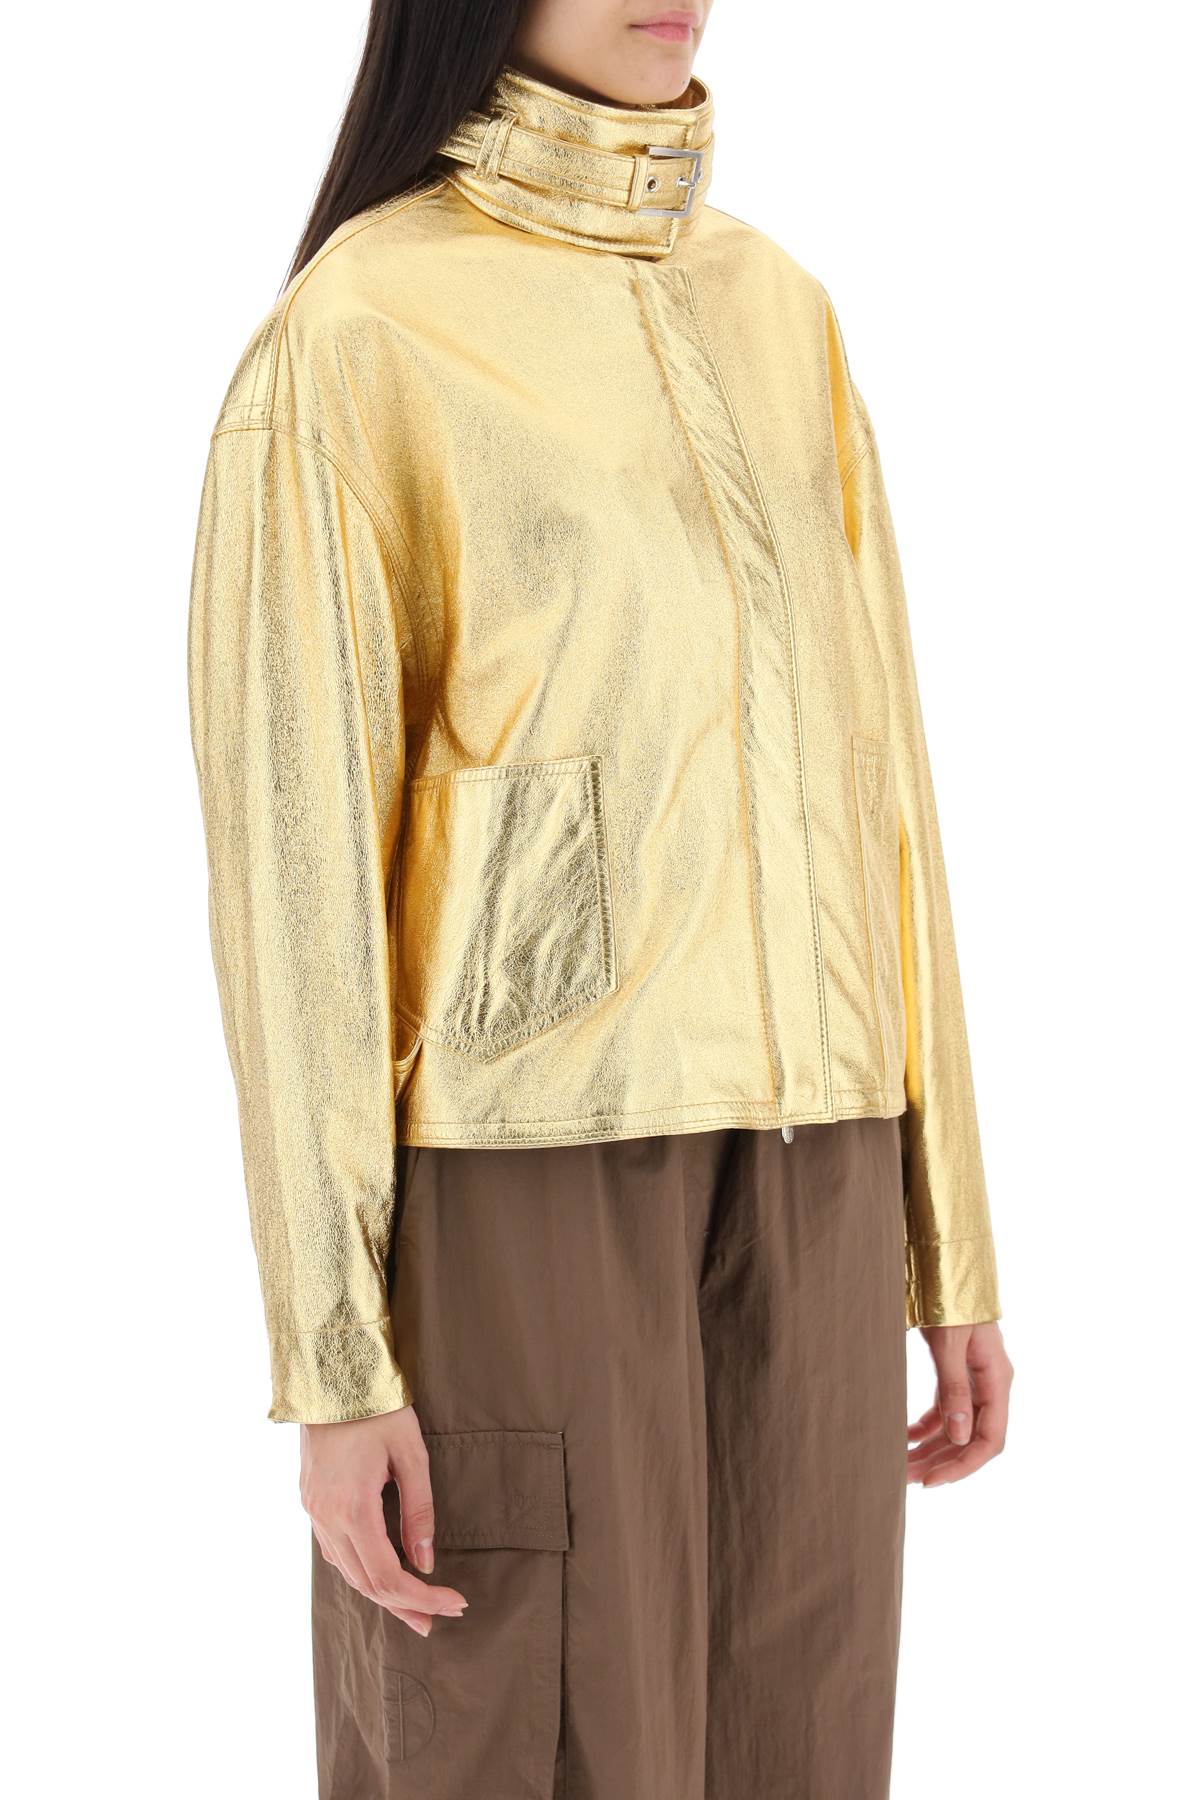 Saks potts 'houston' gold-laminated leather bomber jacket-1